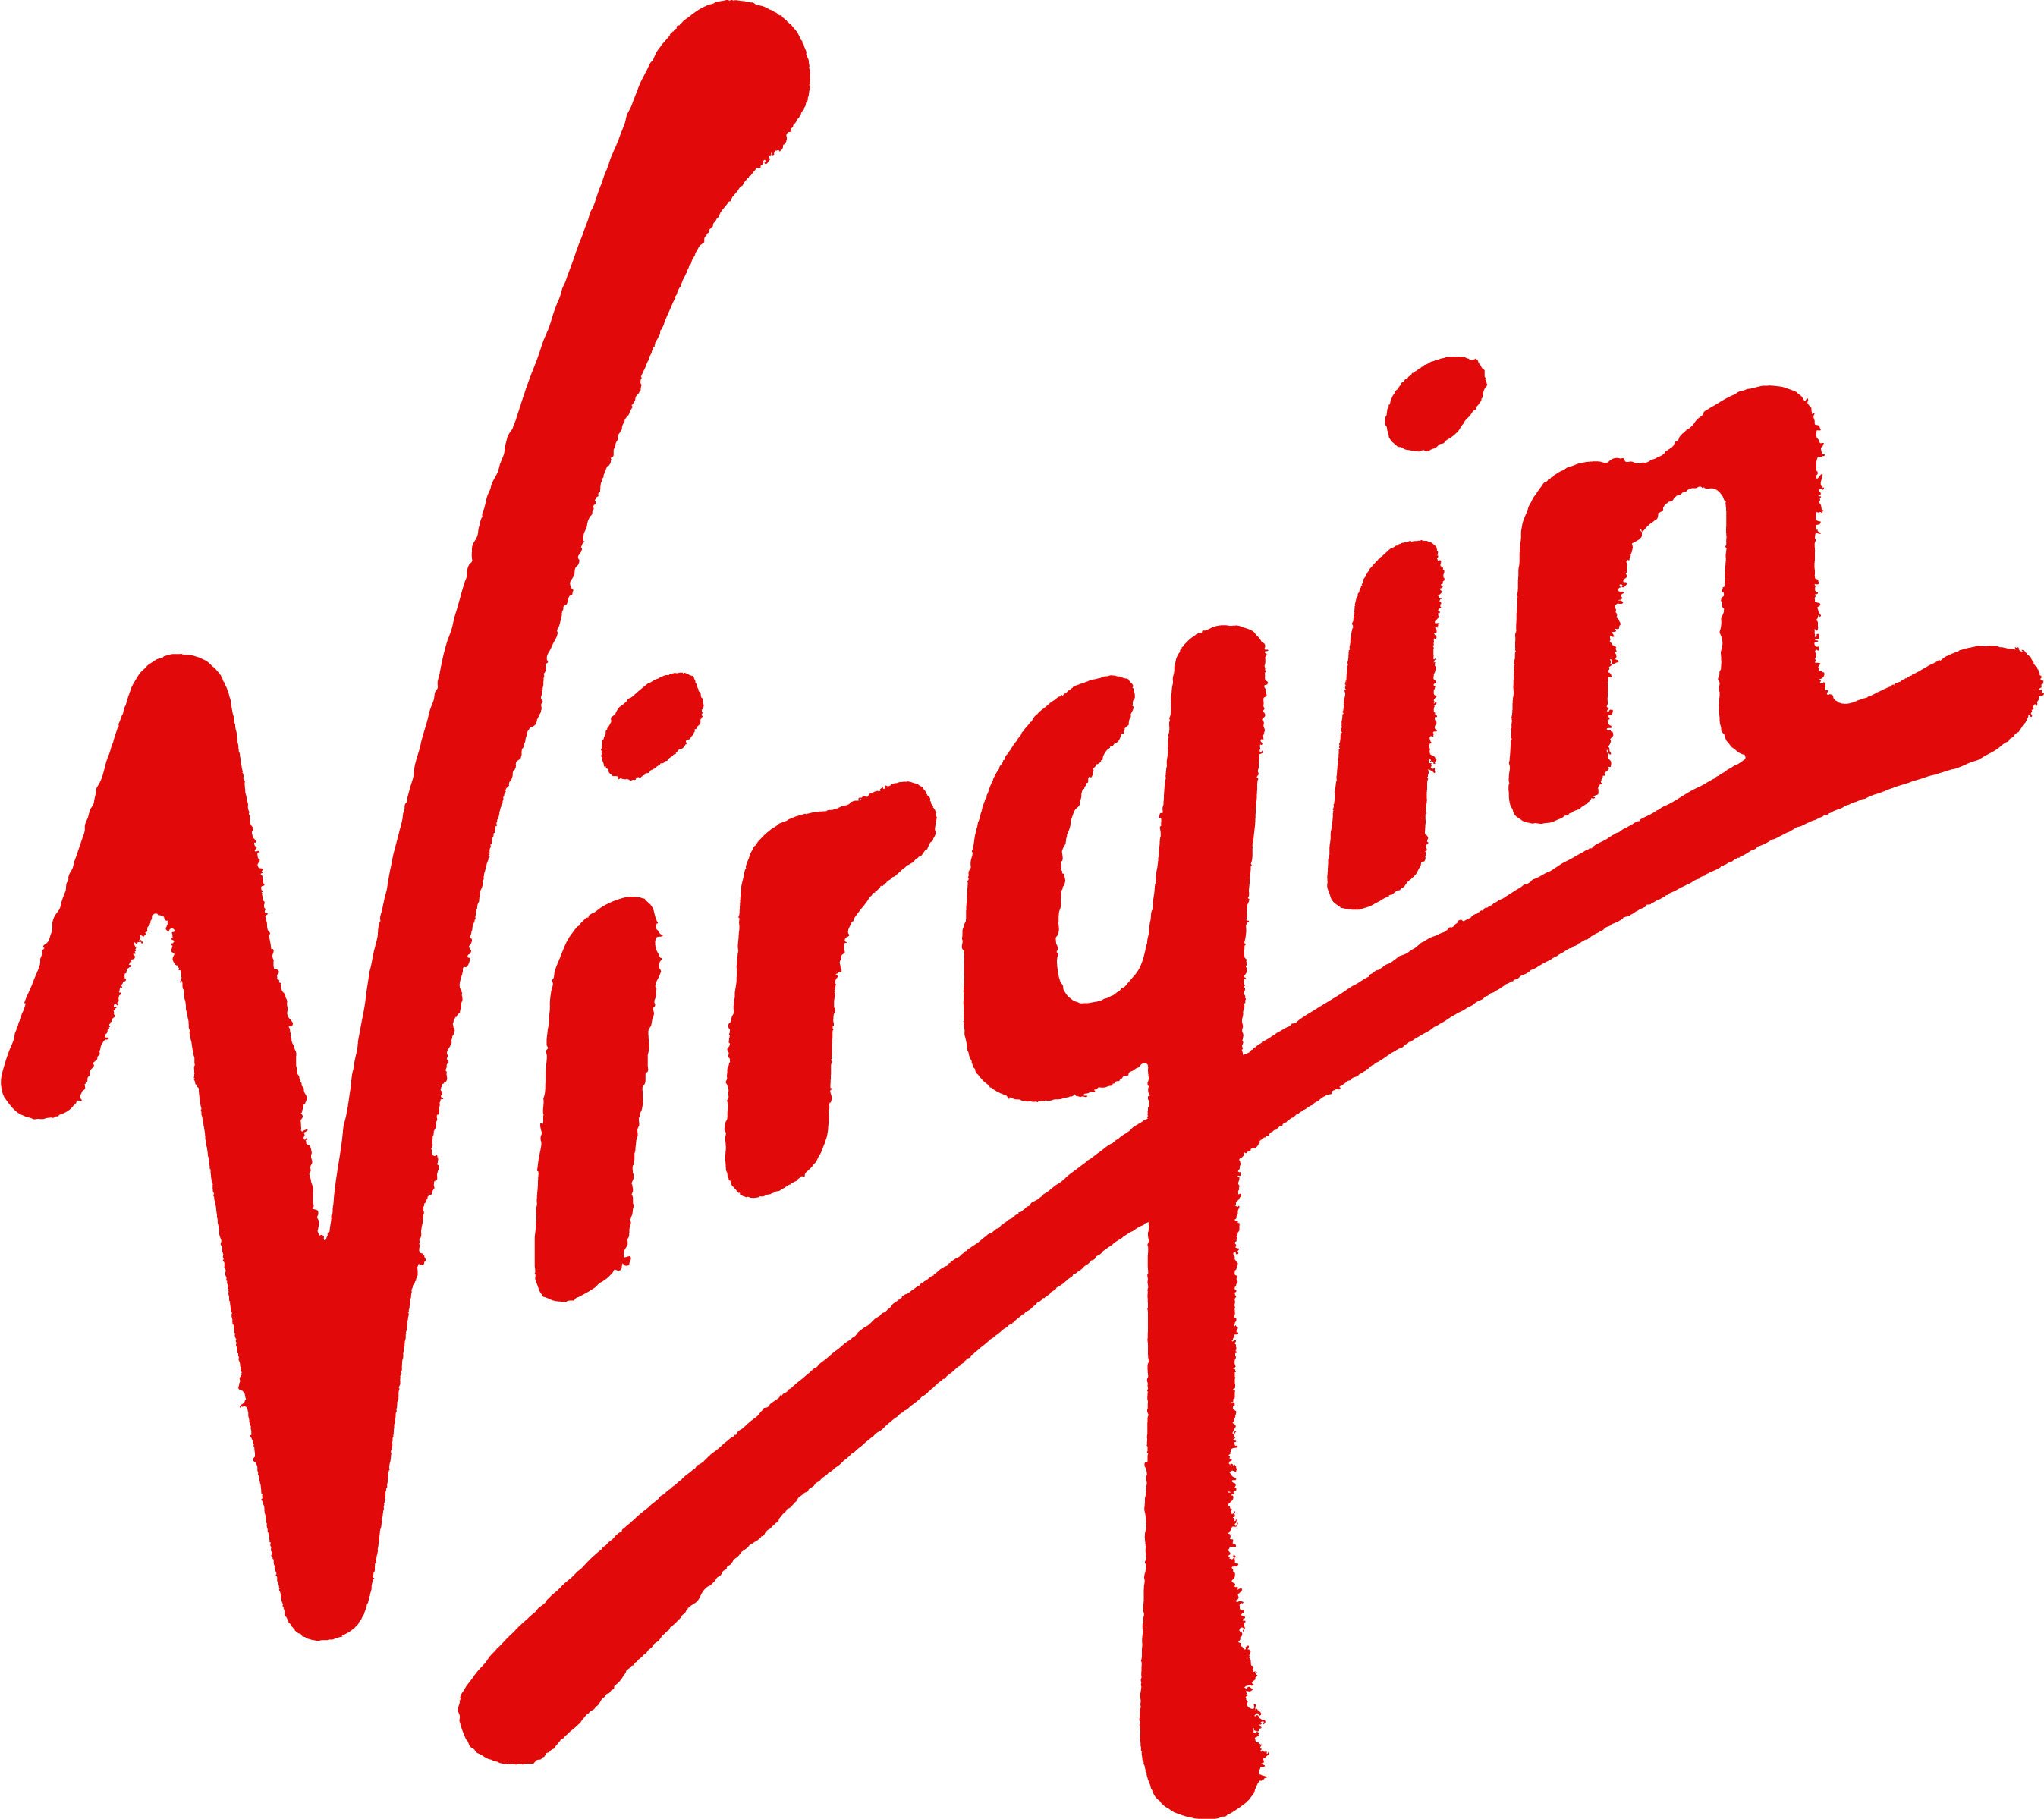 Virgin_NASA_logo.jpg